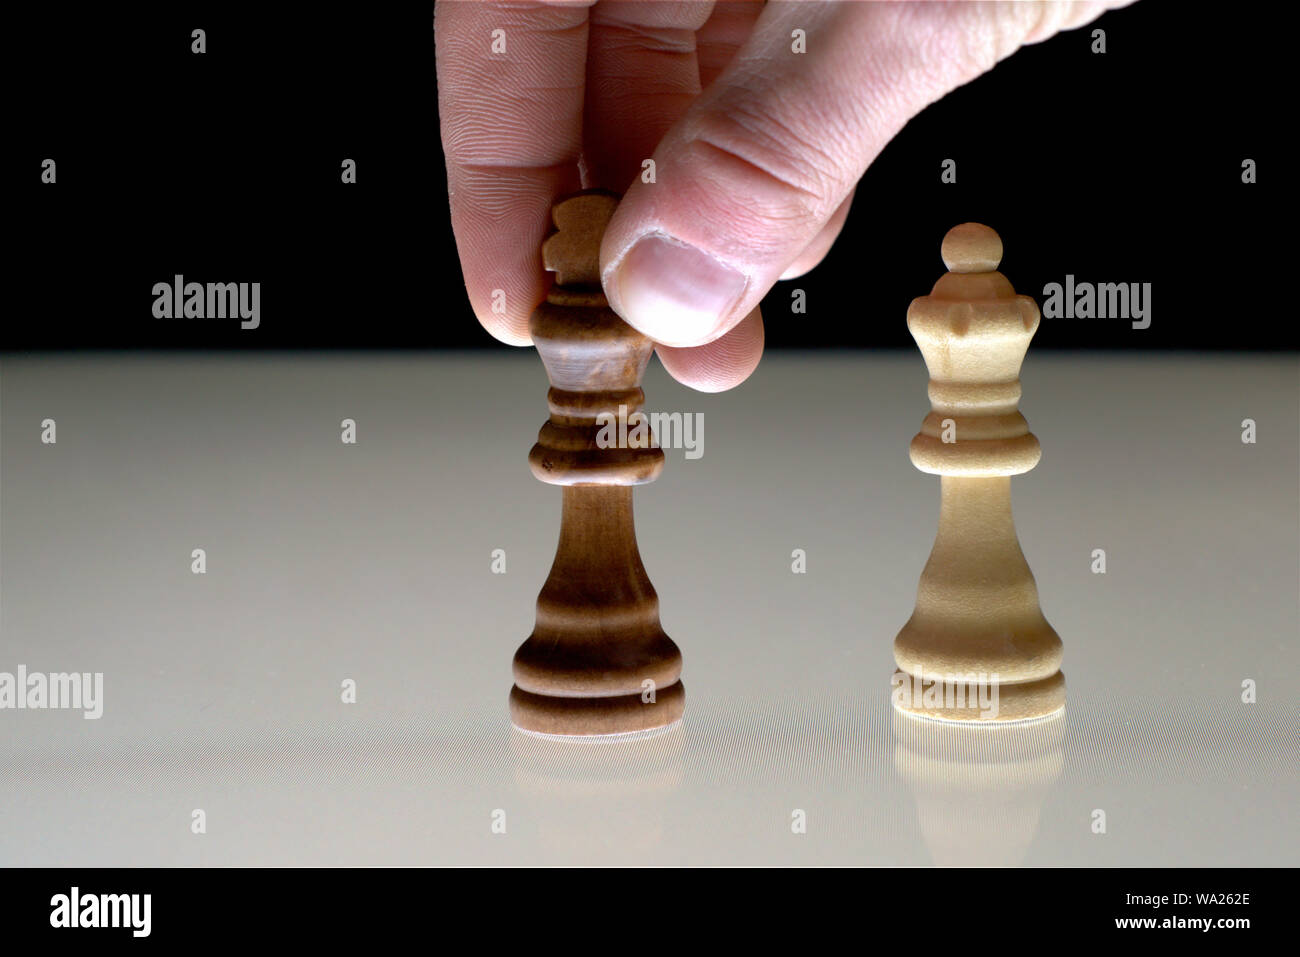 Hand verschieben einer Schwarz chess König neben dem Weißen Königin, als Konzept zur Rivalität, Konkurrenz, macht Spiele. Stockfoto